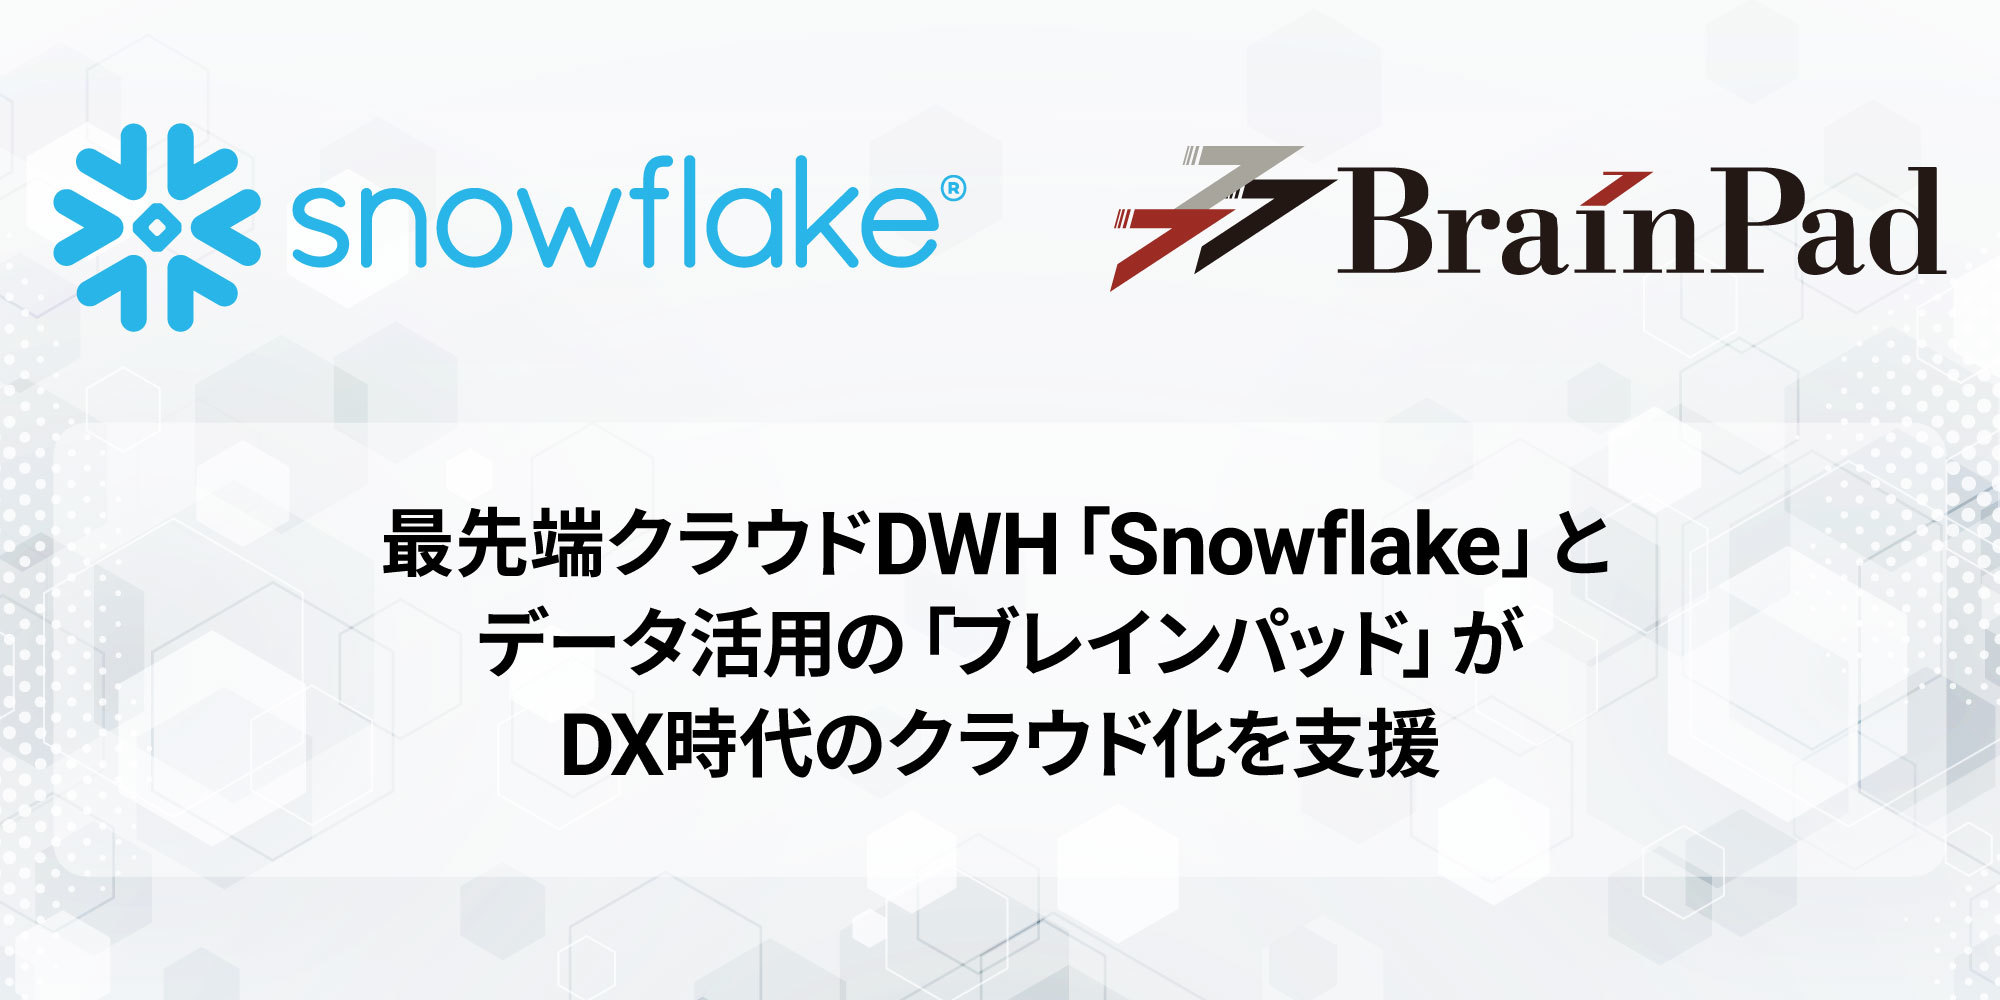 ブレインパッド、シリコンバレー創業のクラウドデータプラットフォーム「Snowflake」を提供開始